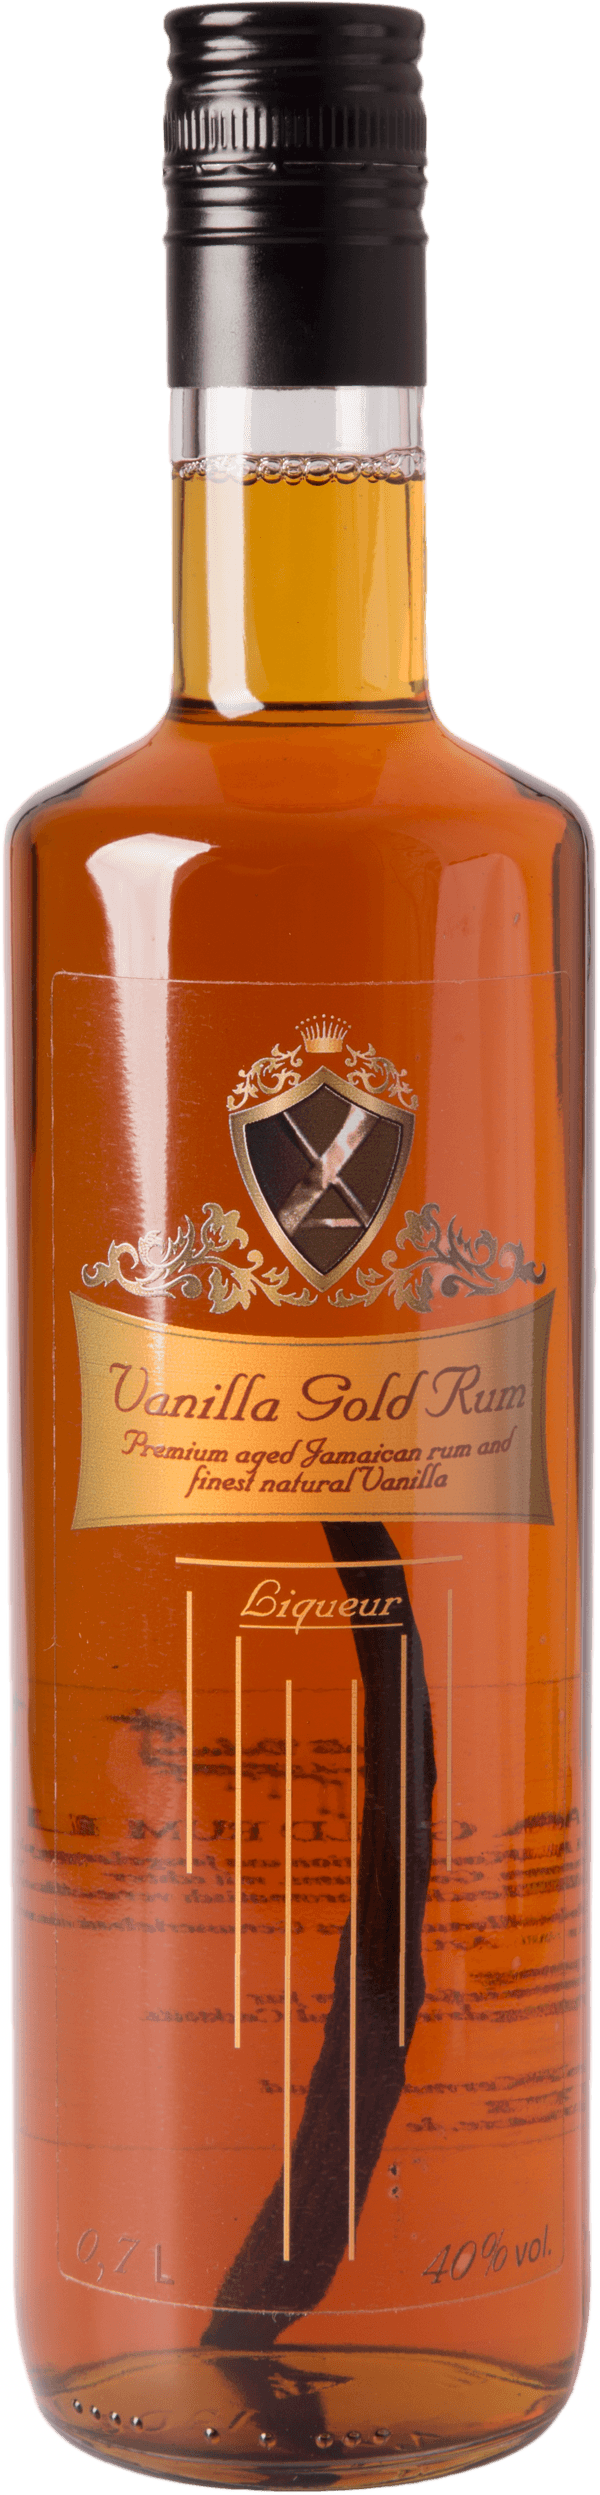 taste-deluxe-vanille-gold-rum-liqueur-40-prozent-shop